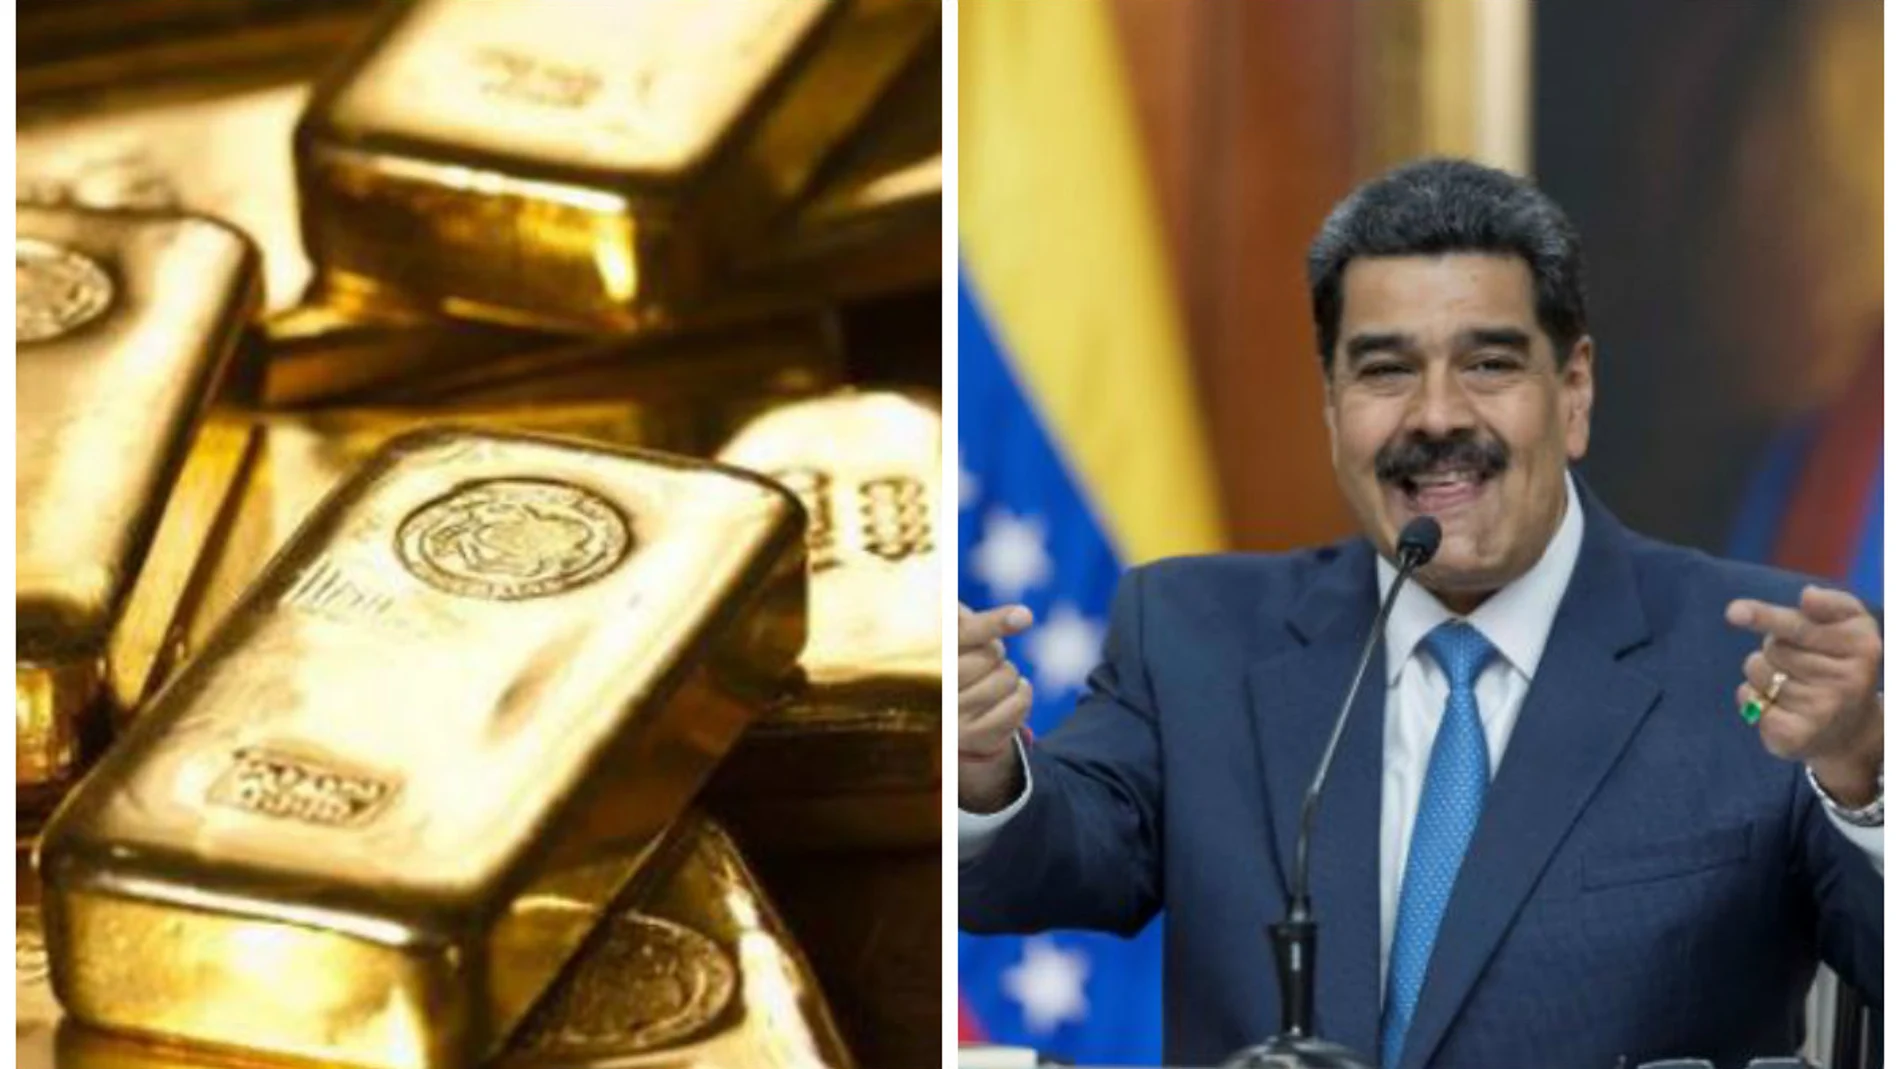 Oro decomisado a un avión venezolano